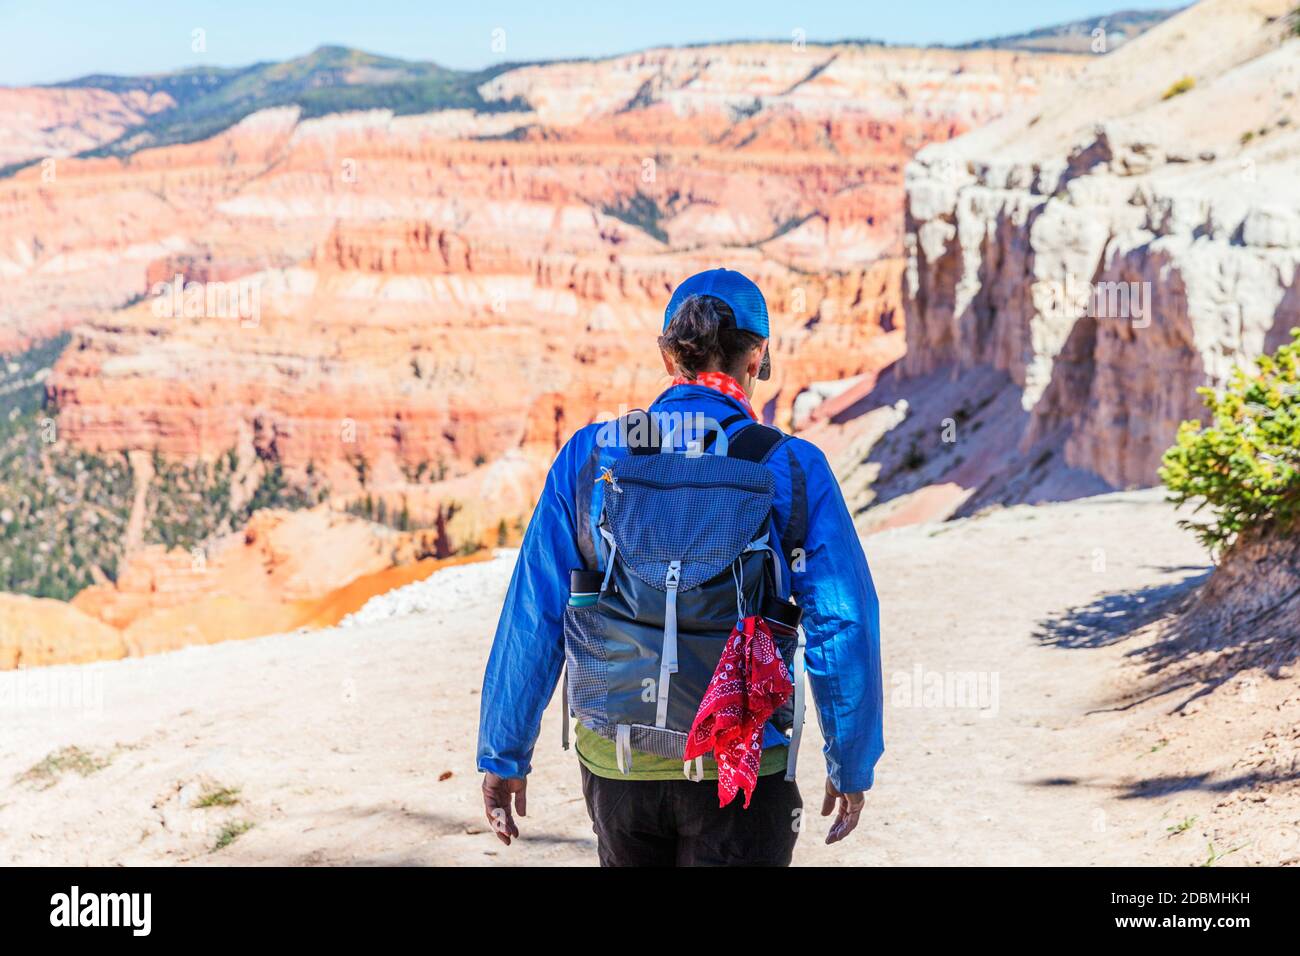 Una donna escursionista nella vista panoramica del Cedar Breaks National Monument, un monumento nazionale degli Stati Uniti situato nello stato dello Utah, vicino a Cedar City. Cedro Foto Stock